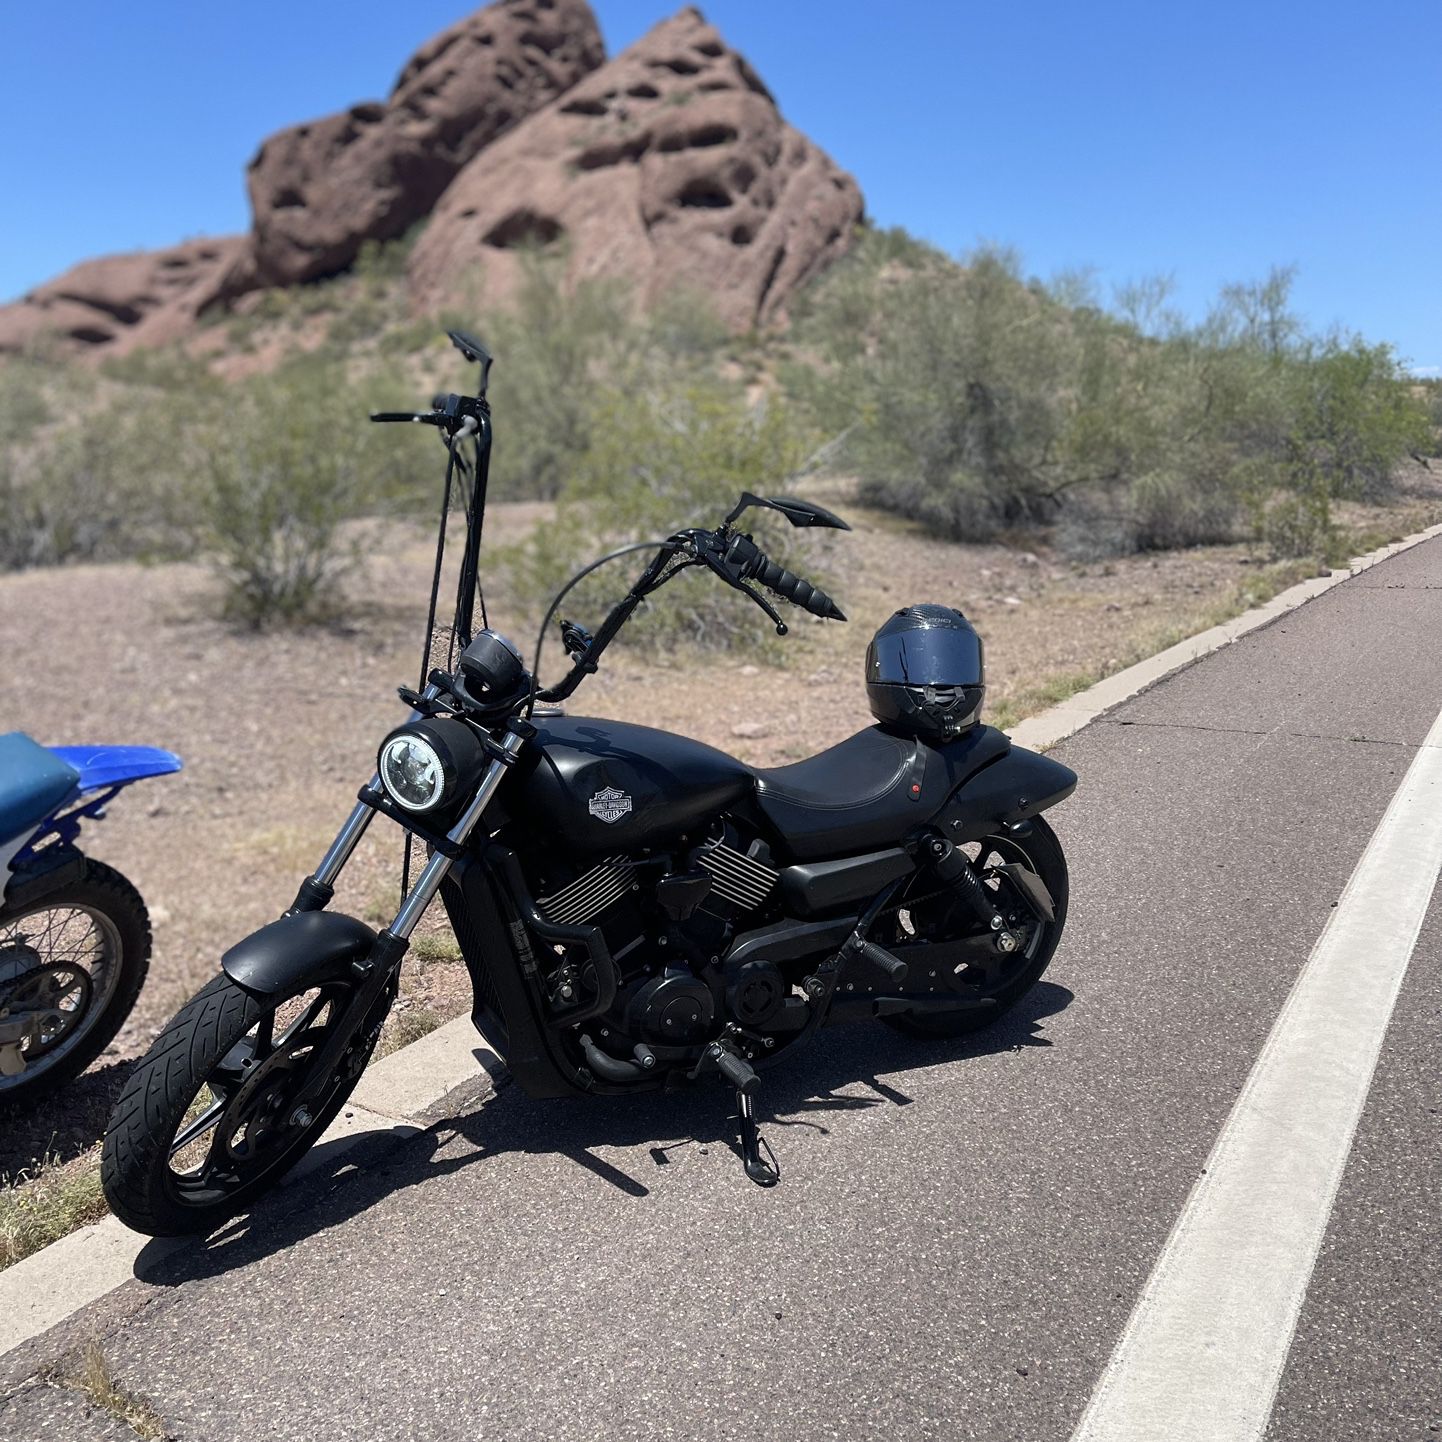 2015 Harley Davidson XG750